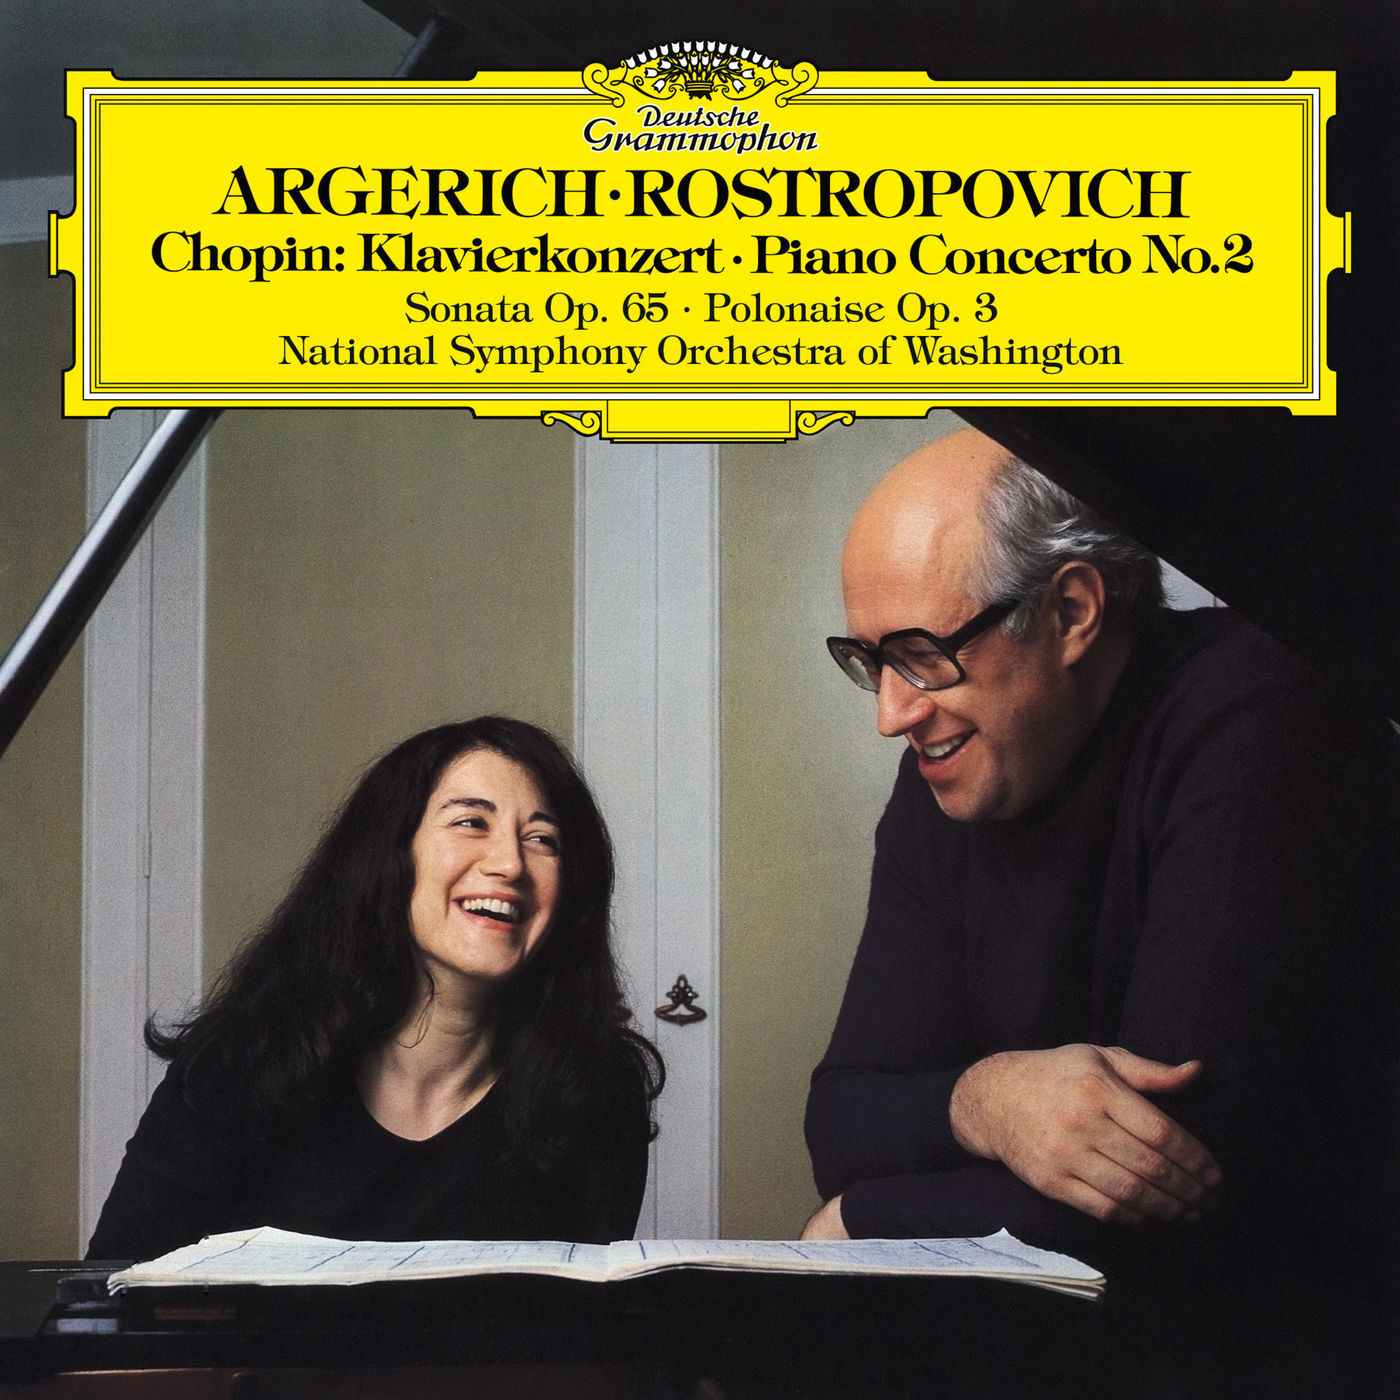 Chopin Pianoconert 2 & cello sonata- Argerich, Rostropovich - HiRes 24-192